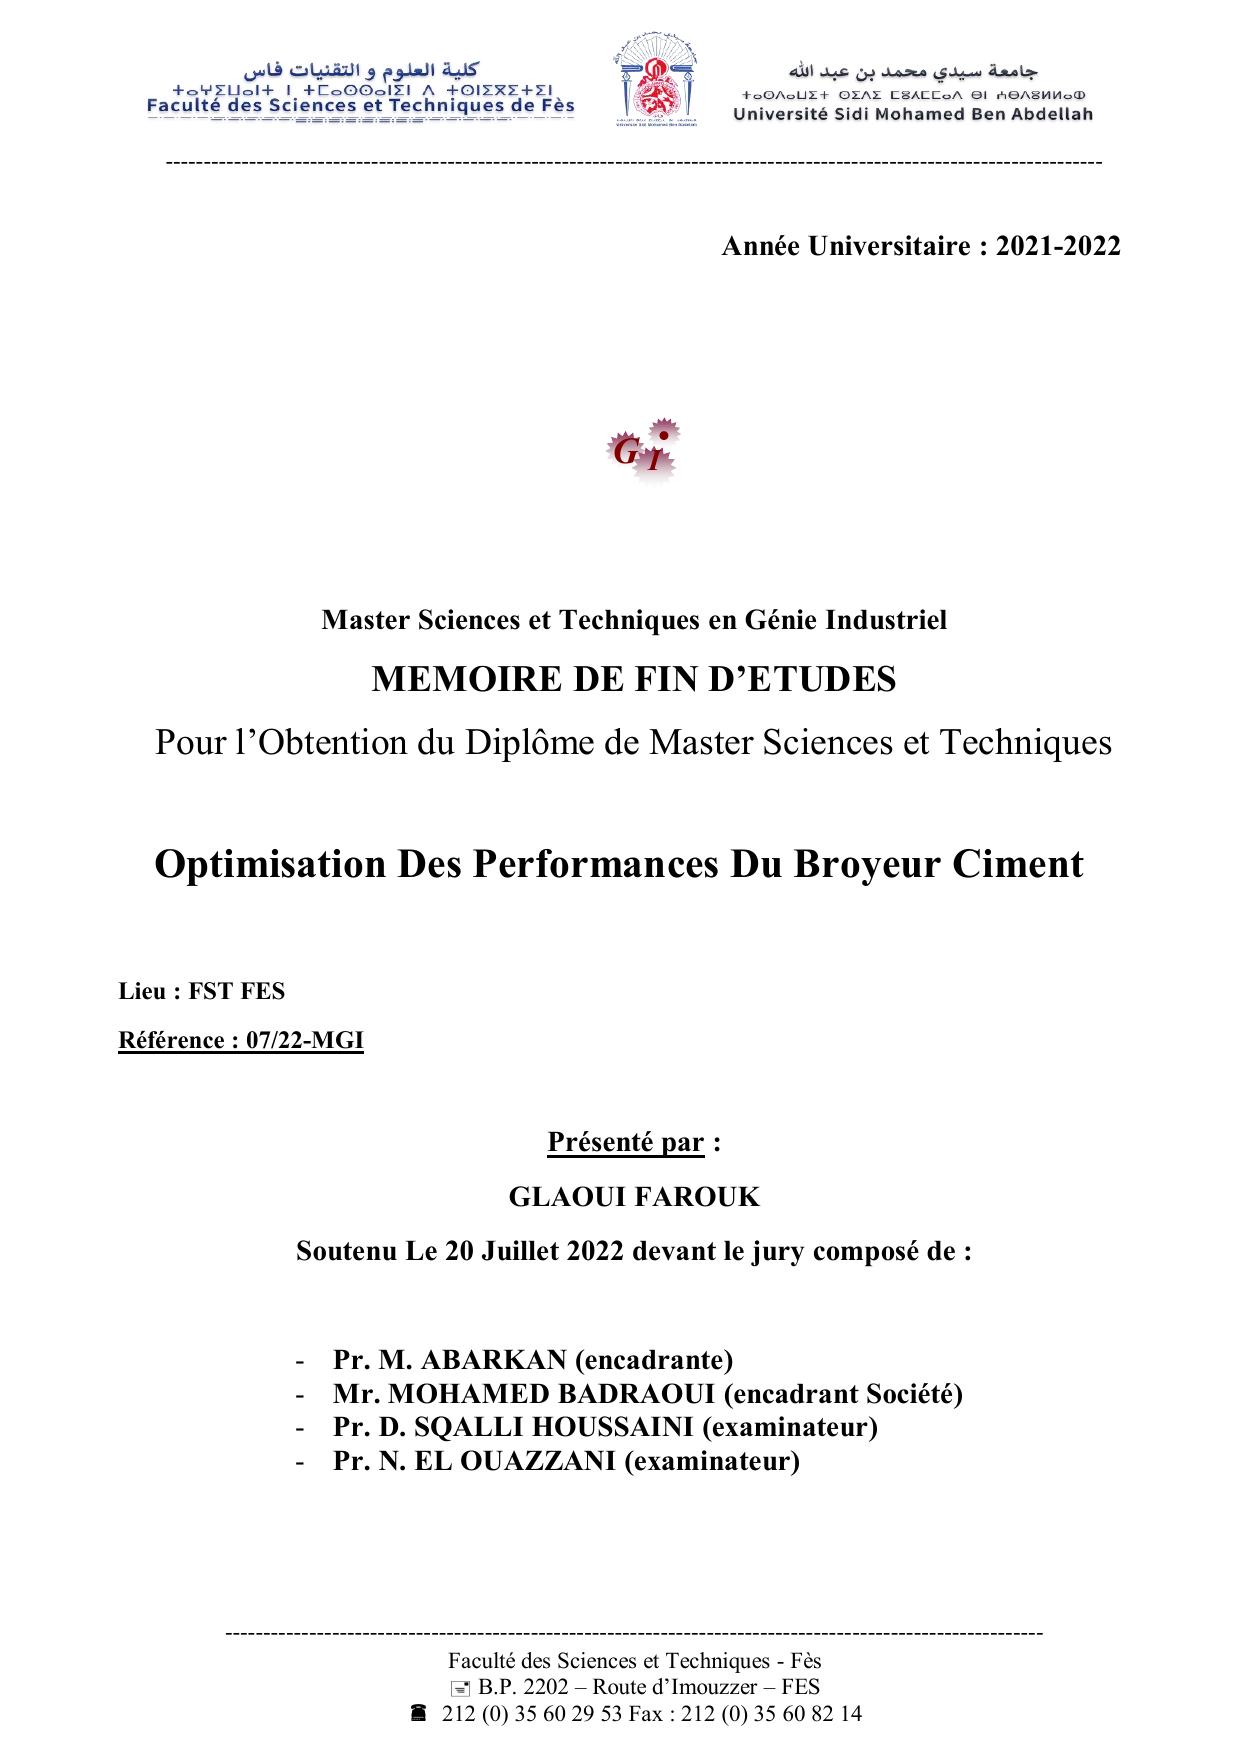 Optimisation Des Performances Du Broyeur Ciment